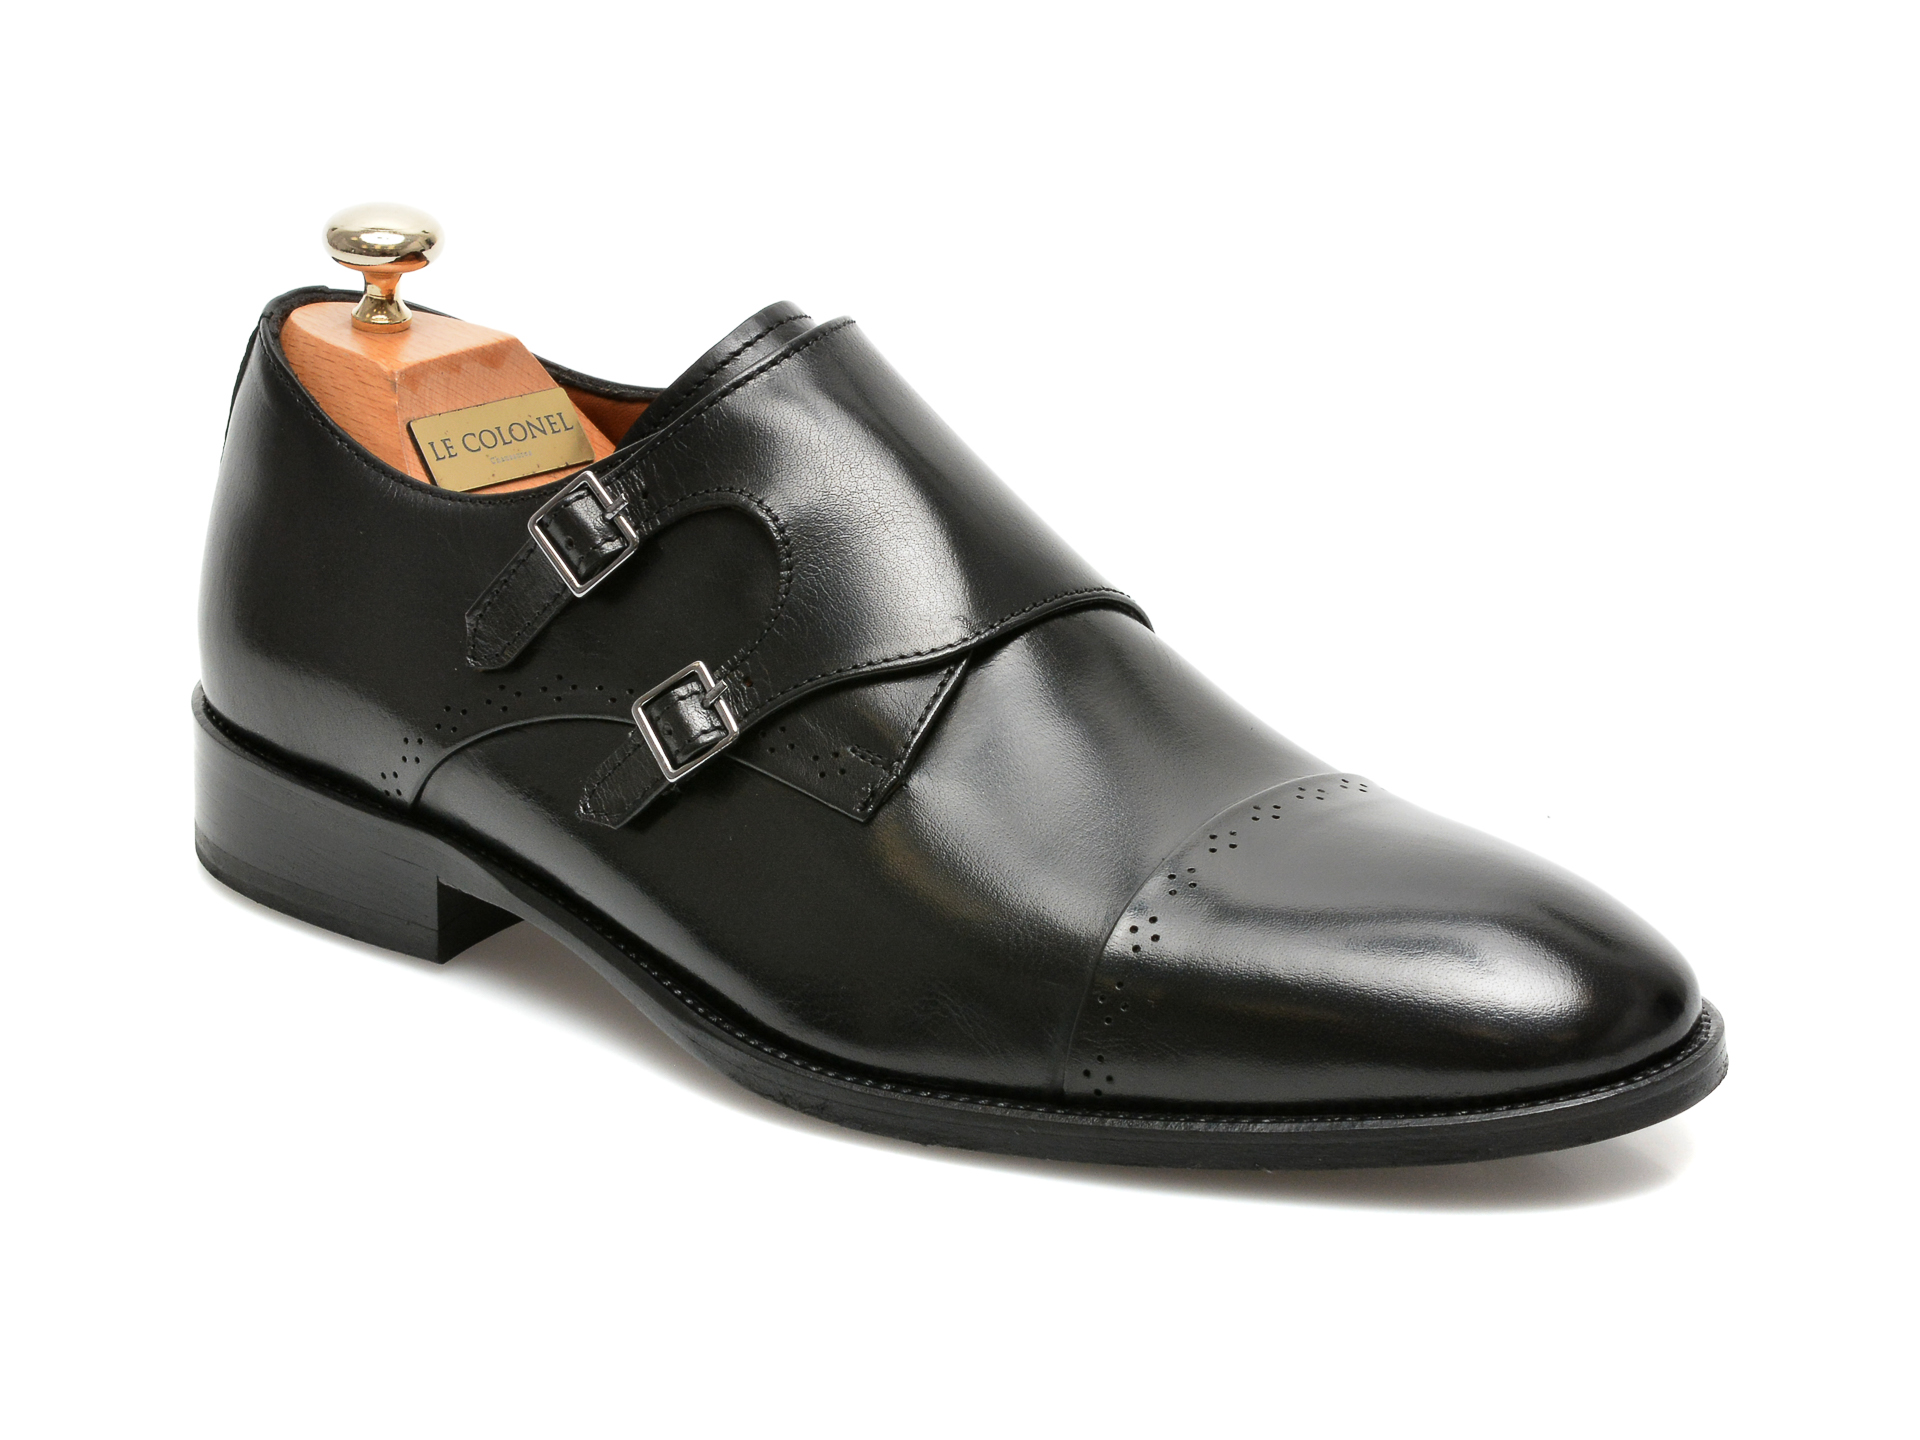 Pantofi LE COLONEL negri, 49844, din piele naturala Le Colonel imagine 2022 reducere